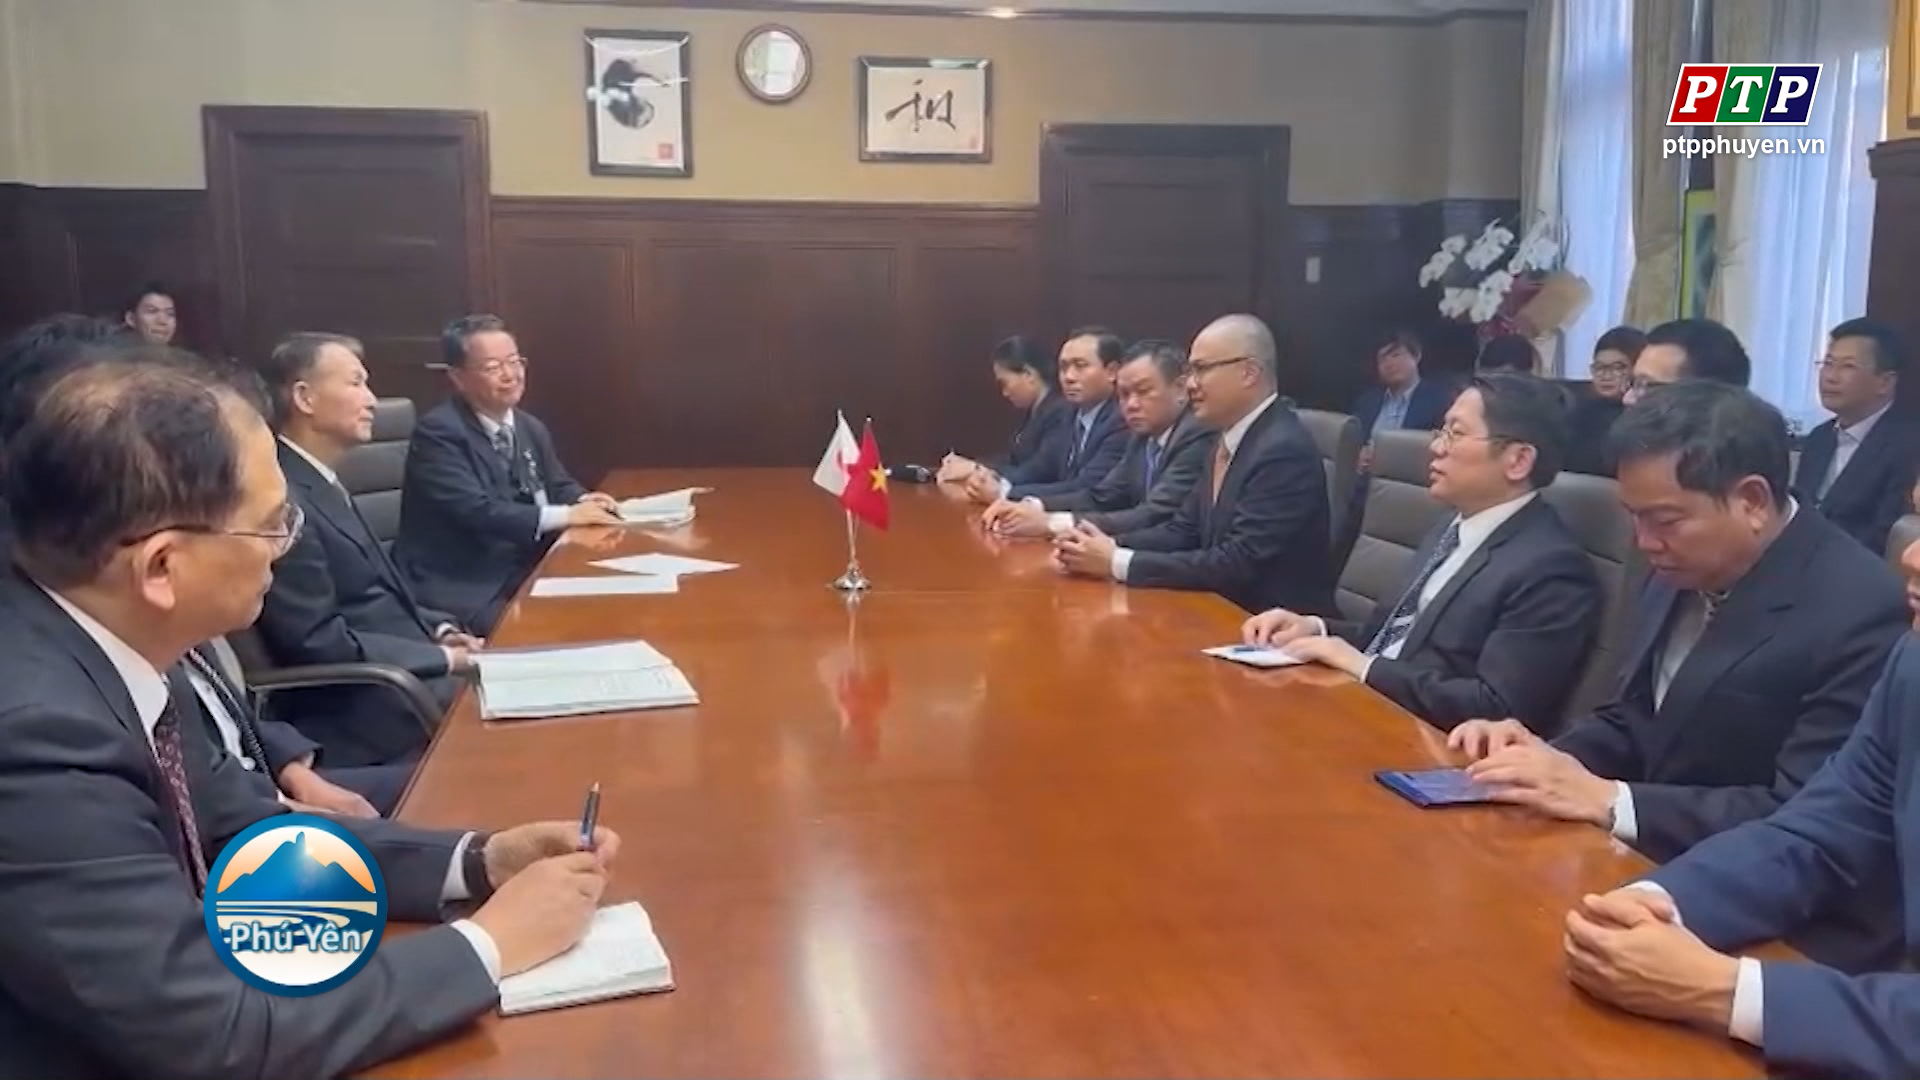 Thúc đẩy quan hệ hợp tác giữa Phú Yên và các địa phương, doanh nghiệp Nhật Bản